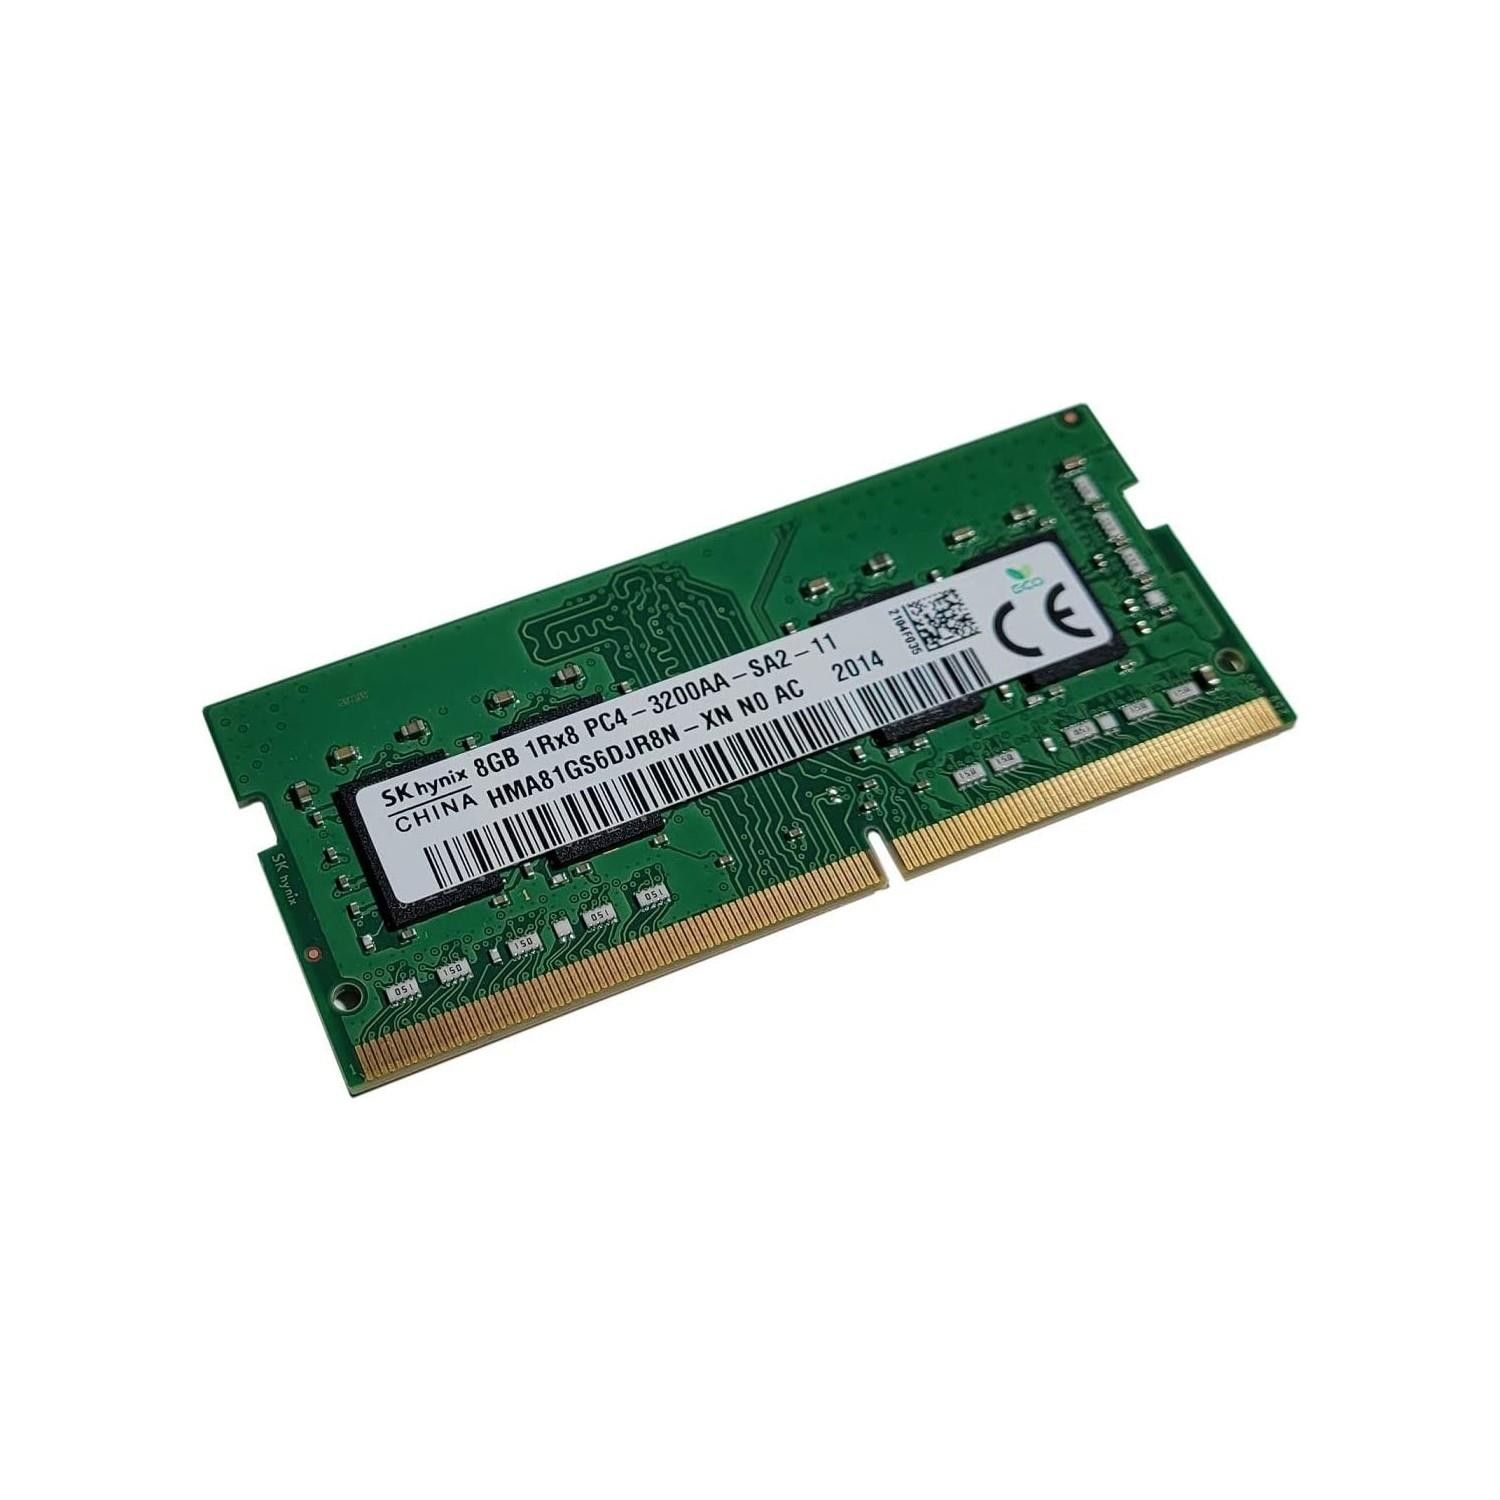 Skhynix 8Gb 3200 Mhz DDR4 SODIMM Ram